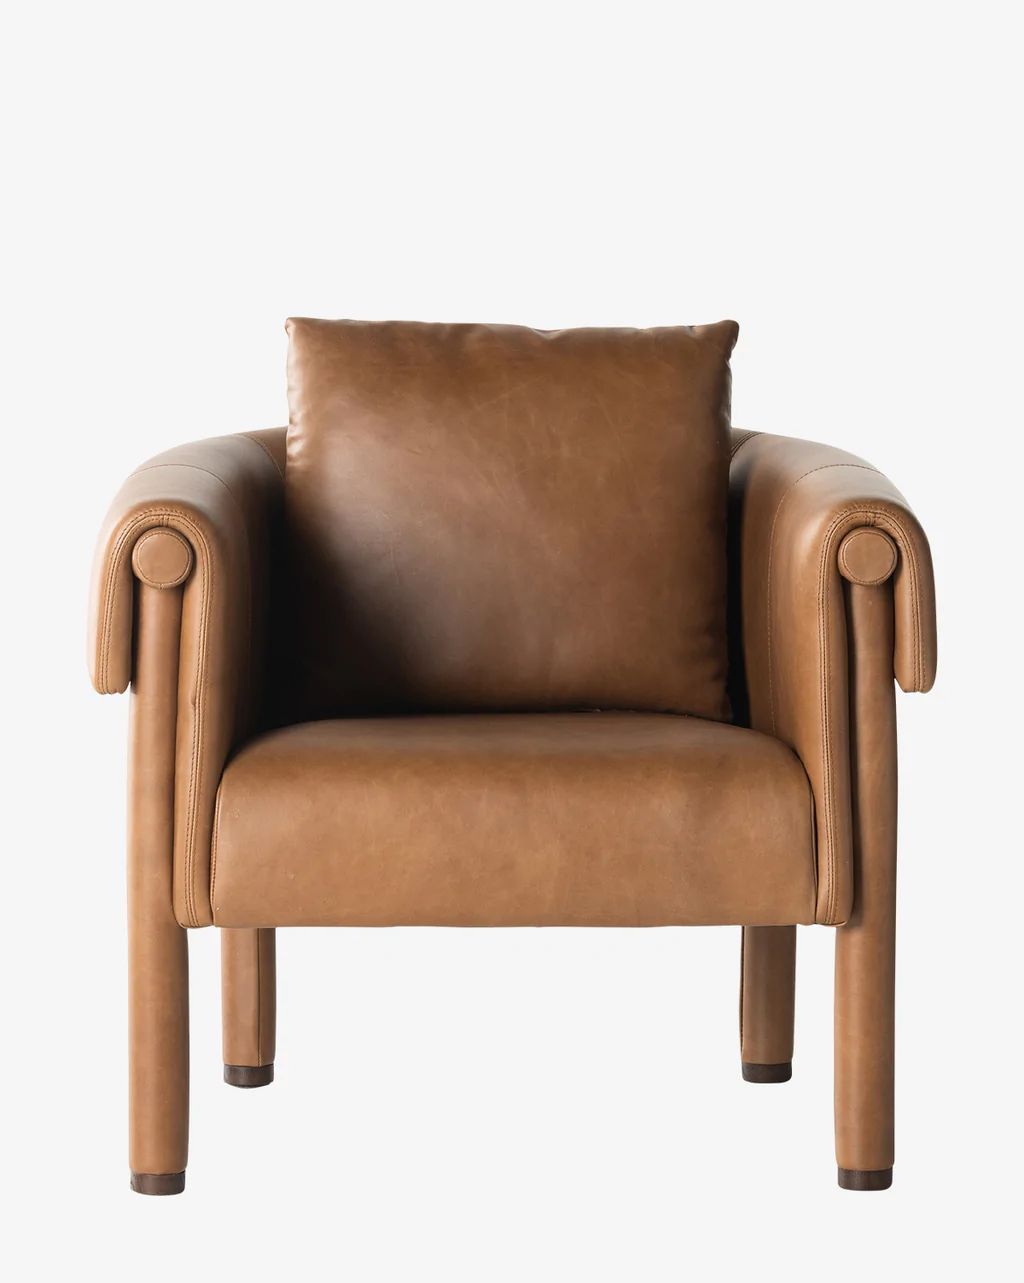 Harold Chair | McGee & Co.